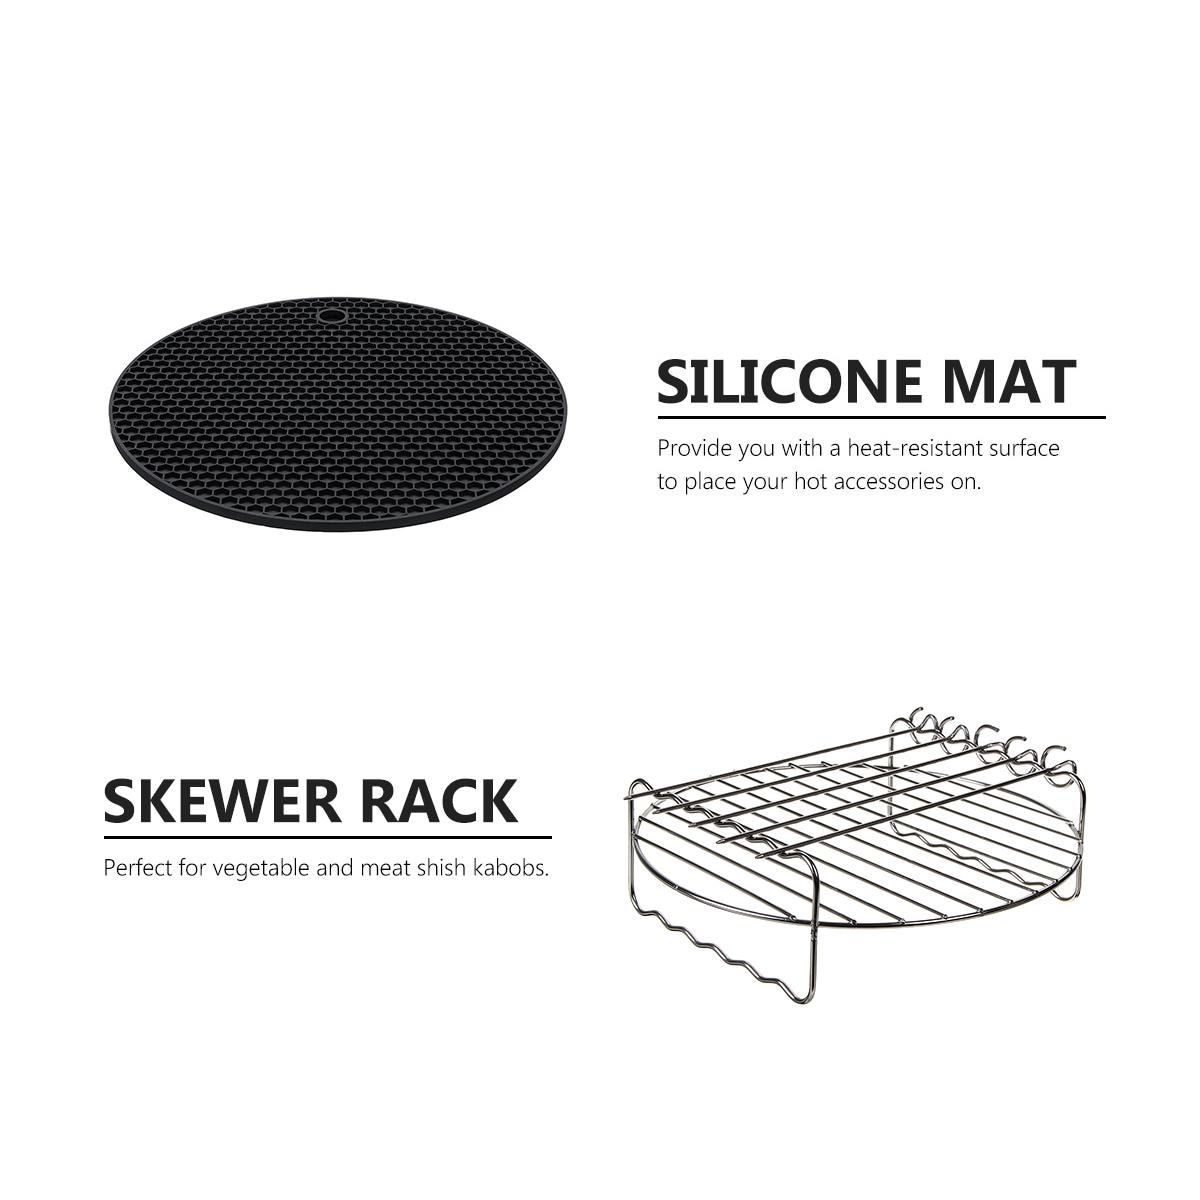 4 stk. 9 tommer tønde pizzapande non-stick silikone måtten spydstativ luftfryser tilbehør coing værktøjer til 5.3 to 6.8qt luftfriture